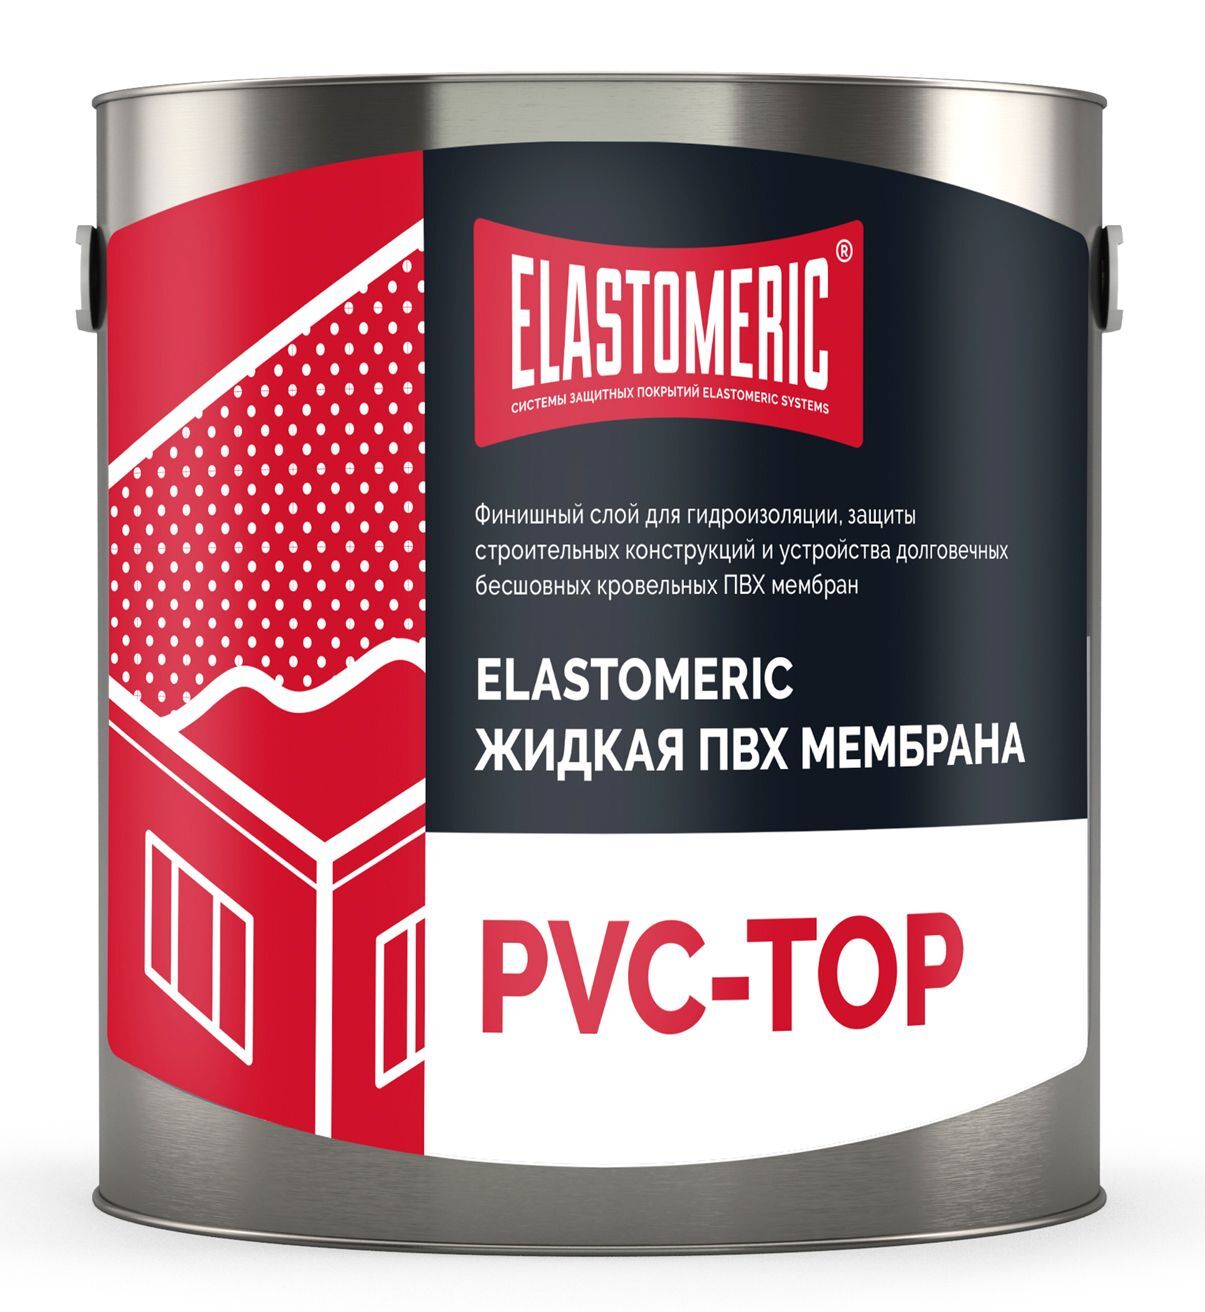 Жидкая ПВХ мембрана - Elastomeric PVC TOP (финишный слой) 3 кг